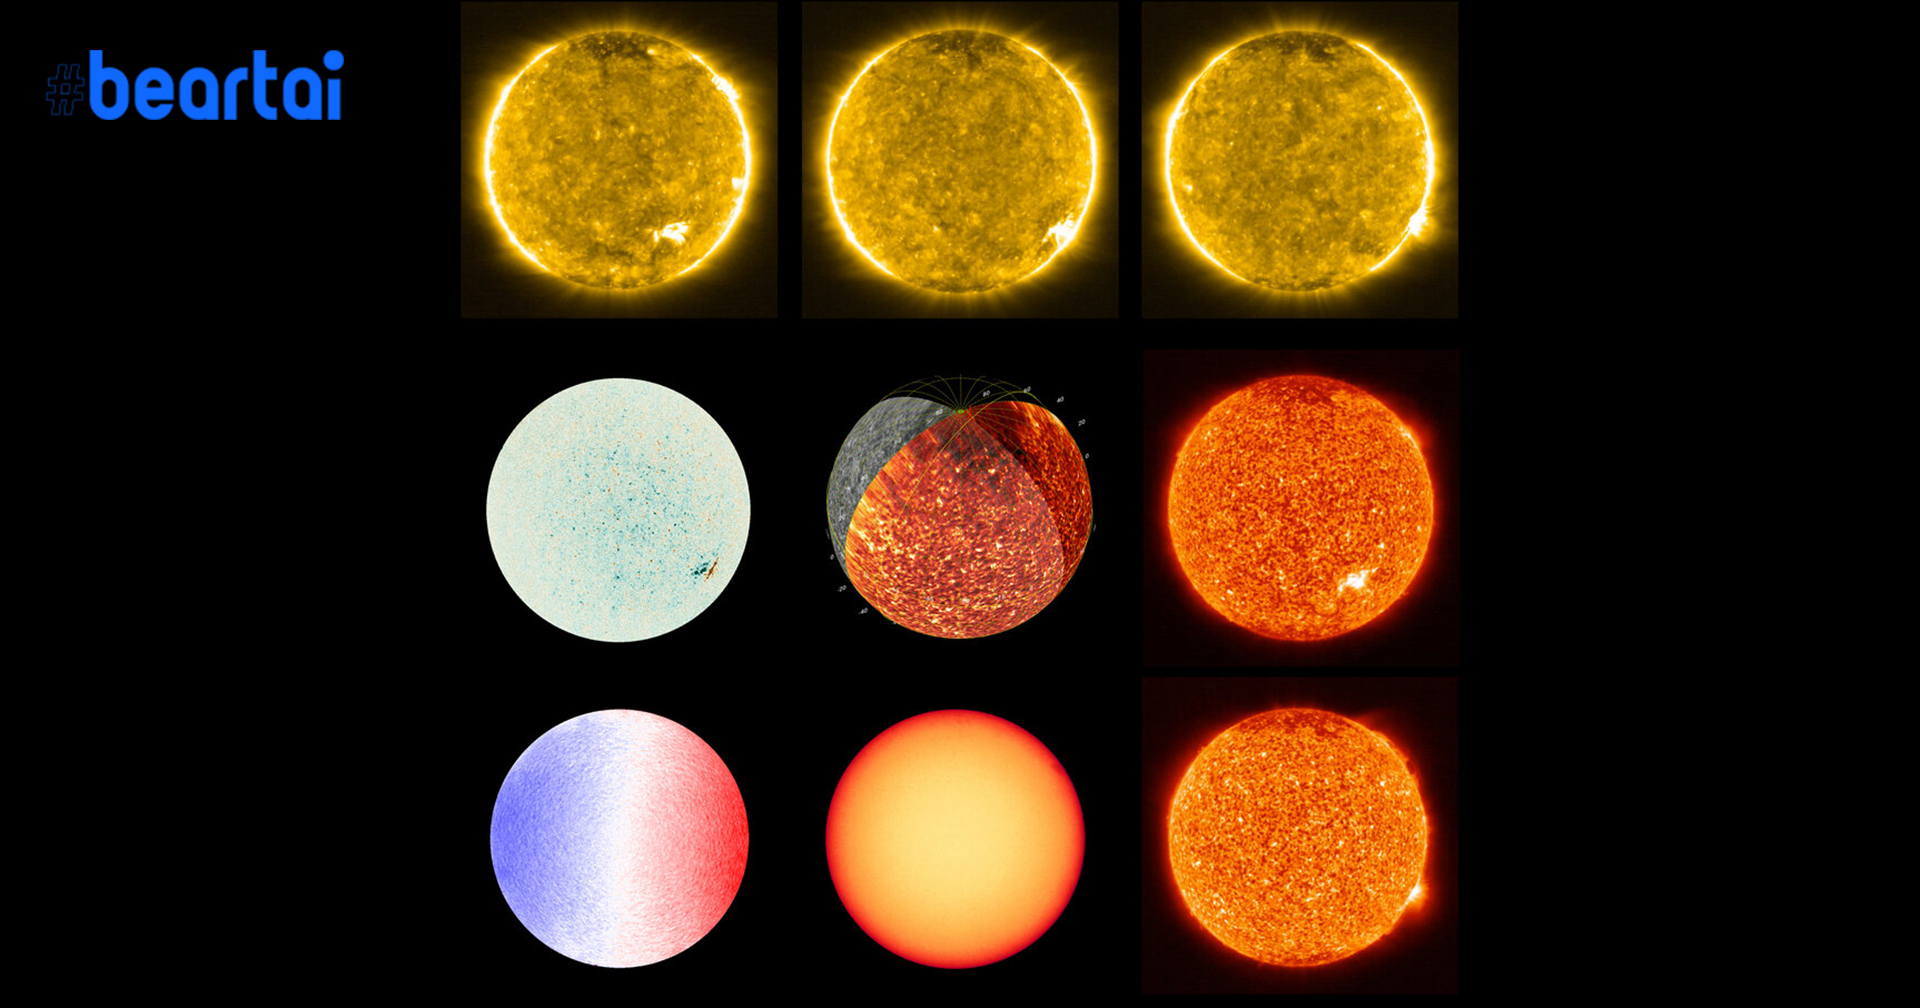 คมชัดทุกรายละเอียด! เมื่อ ESA และ NASA เผยภาพหลากมุมของดวงอาทิตย์ คมชัดใกล้ชิดสุดเท่าที่เคยมีมา